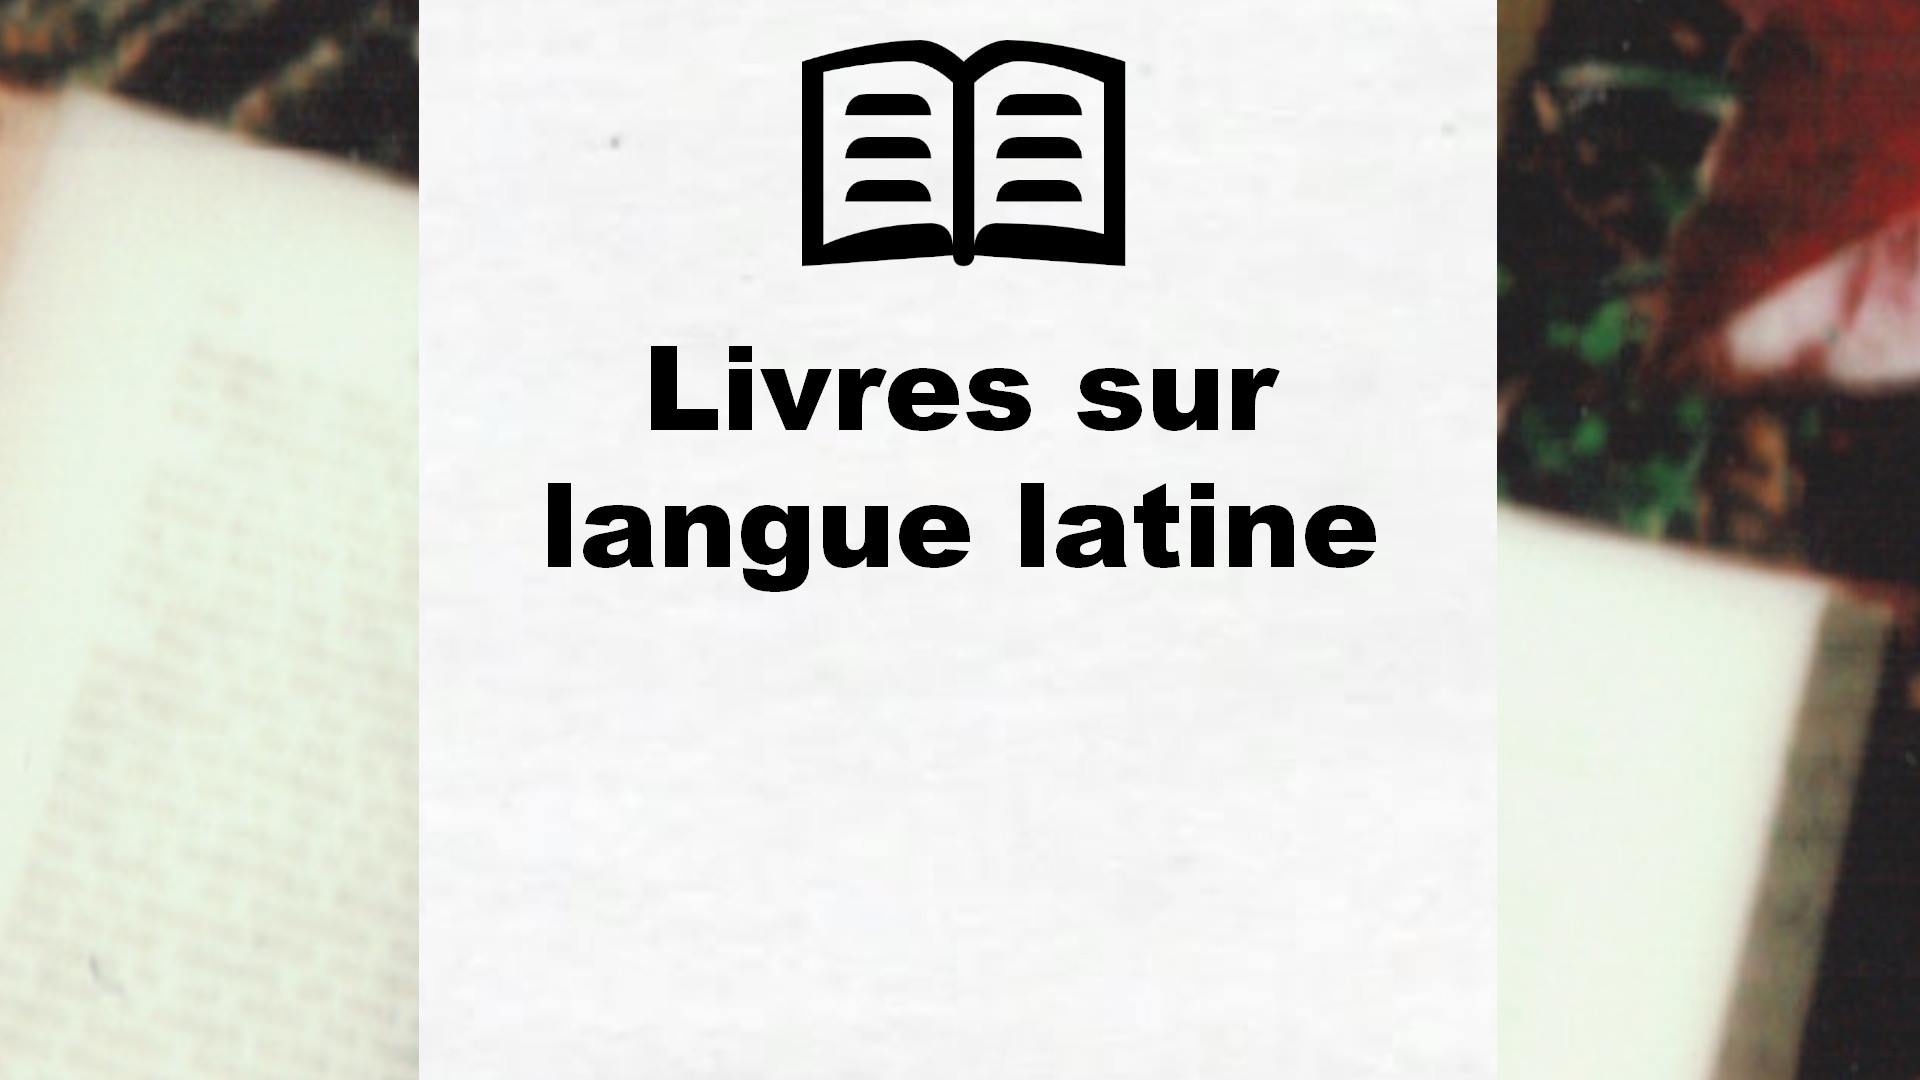 Livres sur langue latine